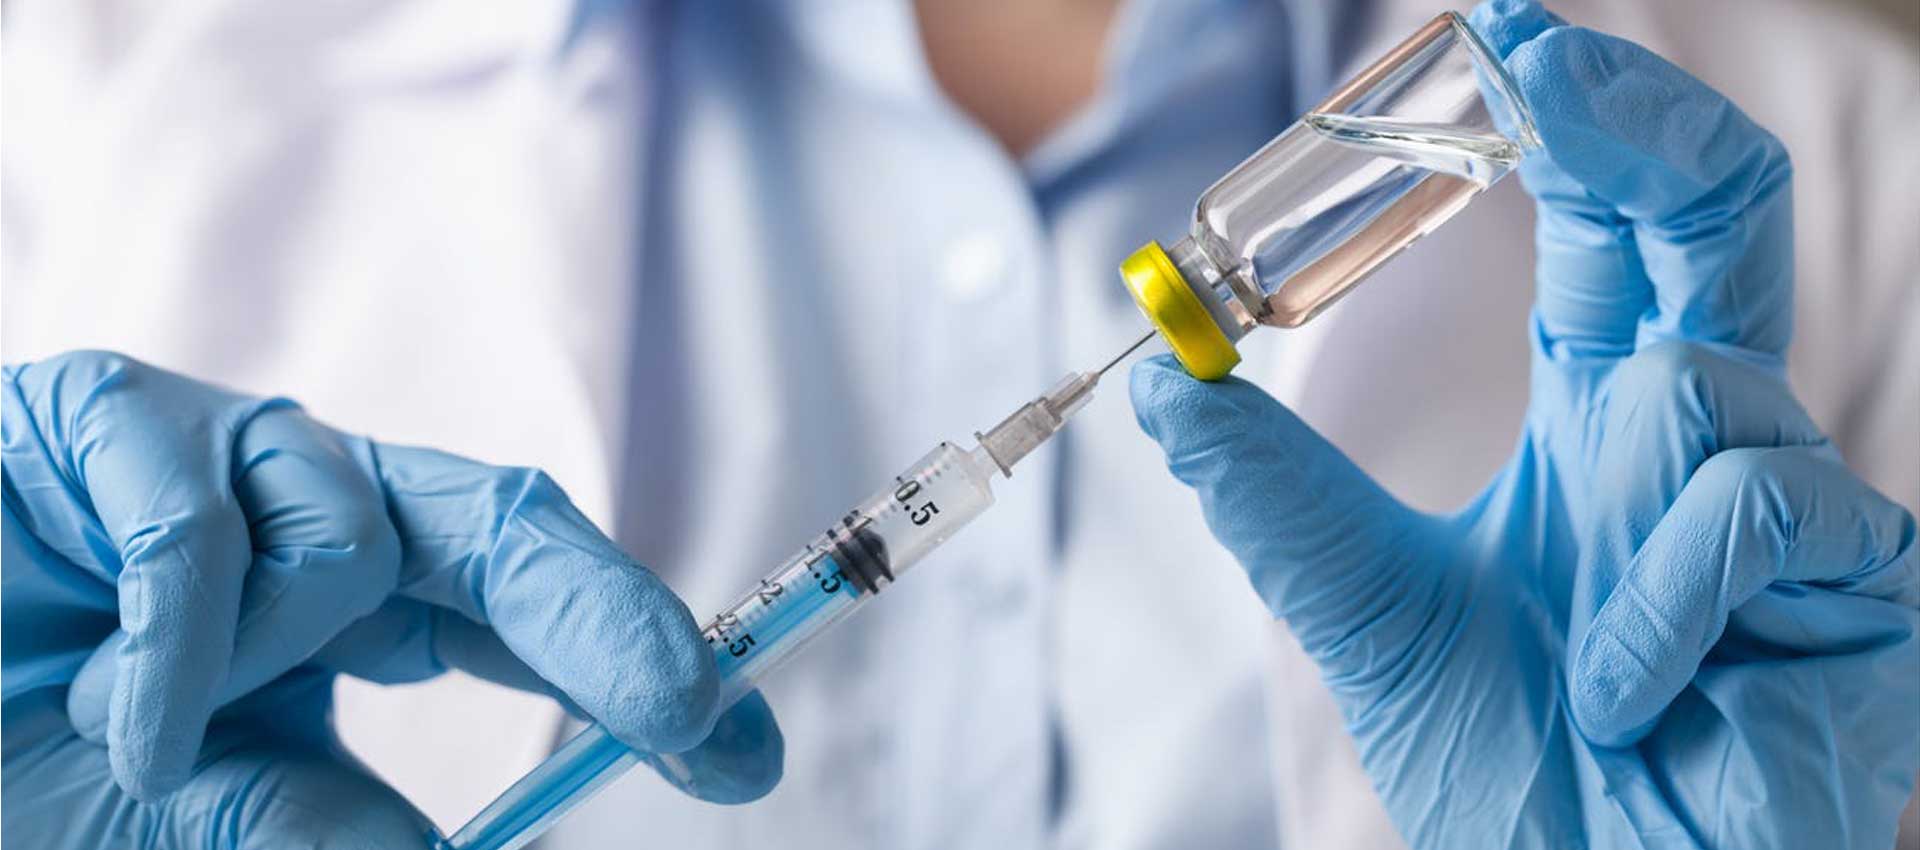 واکسیناسیون علیه آنفلوآنزا از استفاده بی رویه این دارو جلوگیری می کند